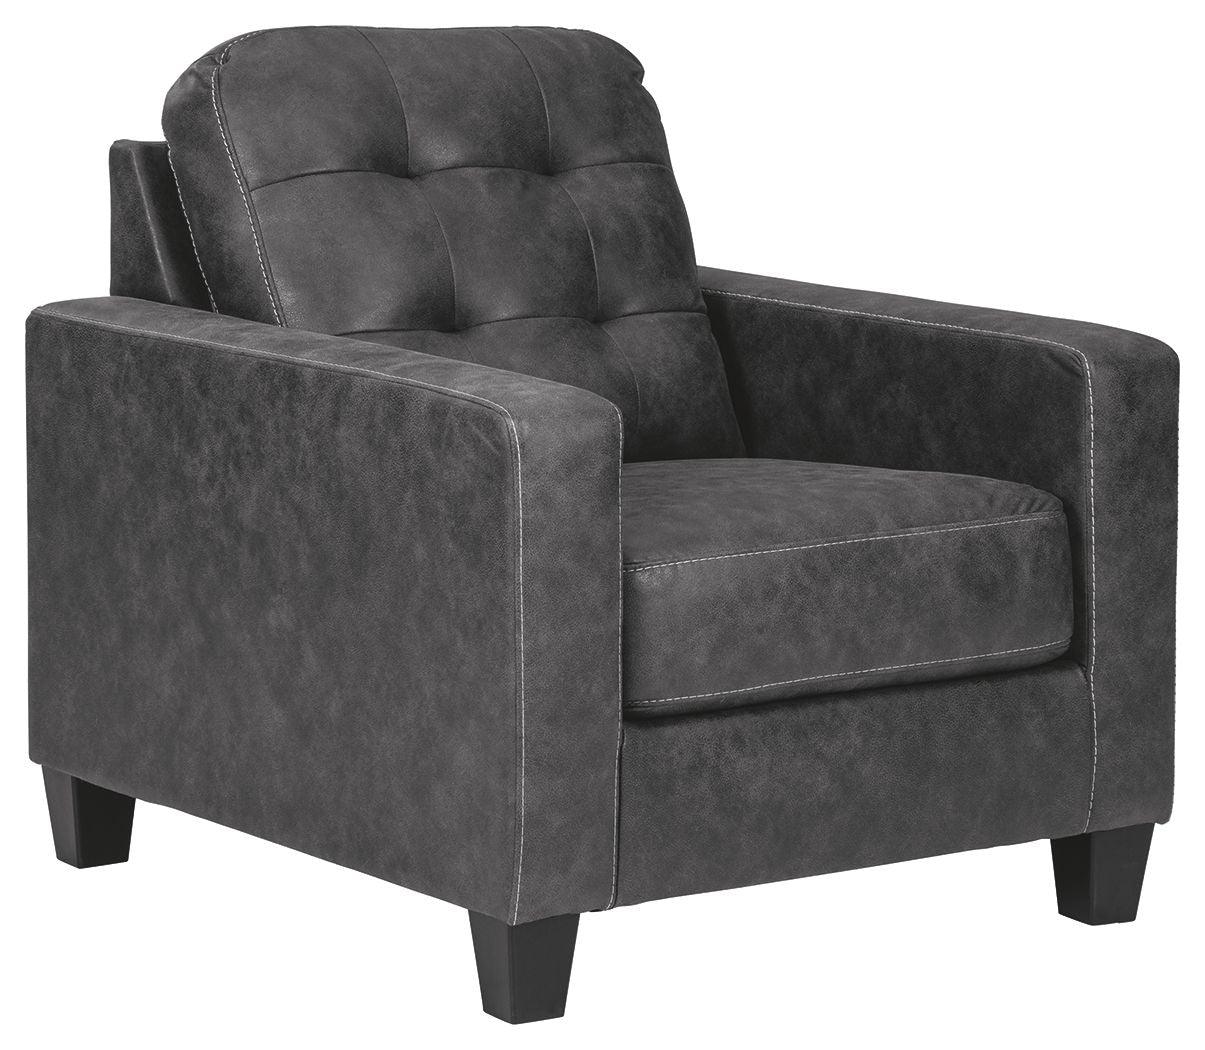 Ashley Furniture - Venaldi - Gunmetal - Chair - 5th Avenue Furniture